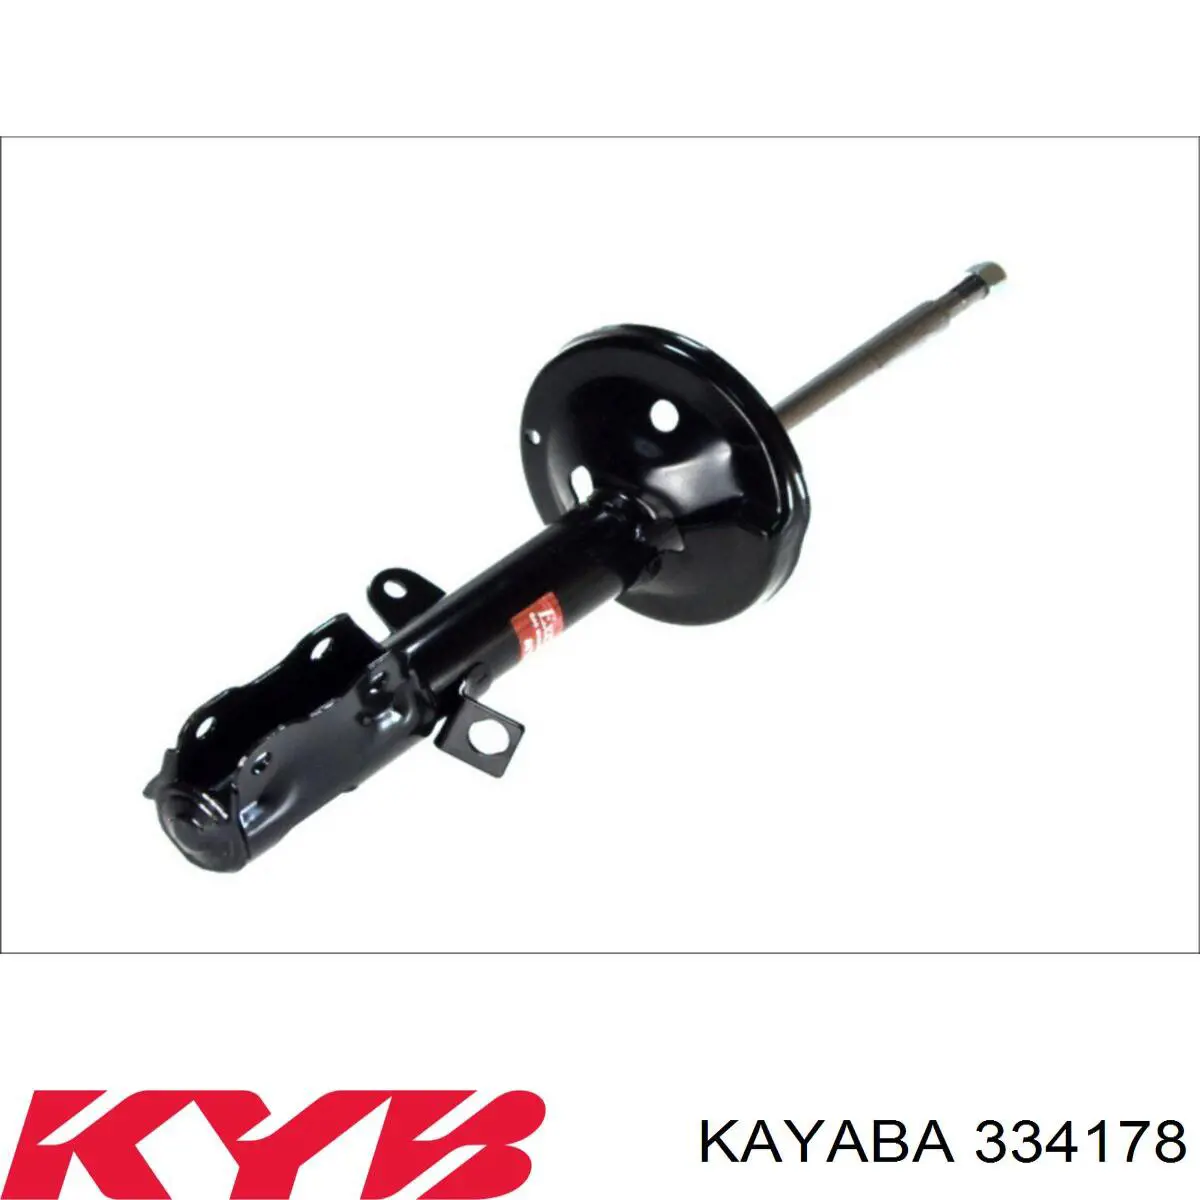 334178 Kayaba amortiguador trasero derecho